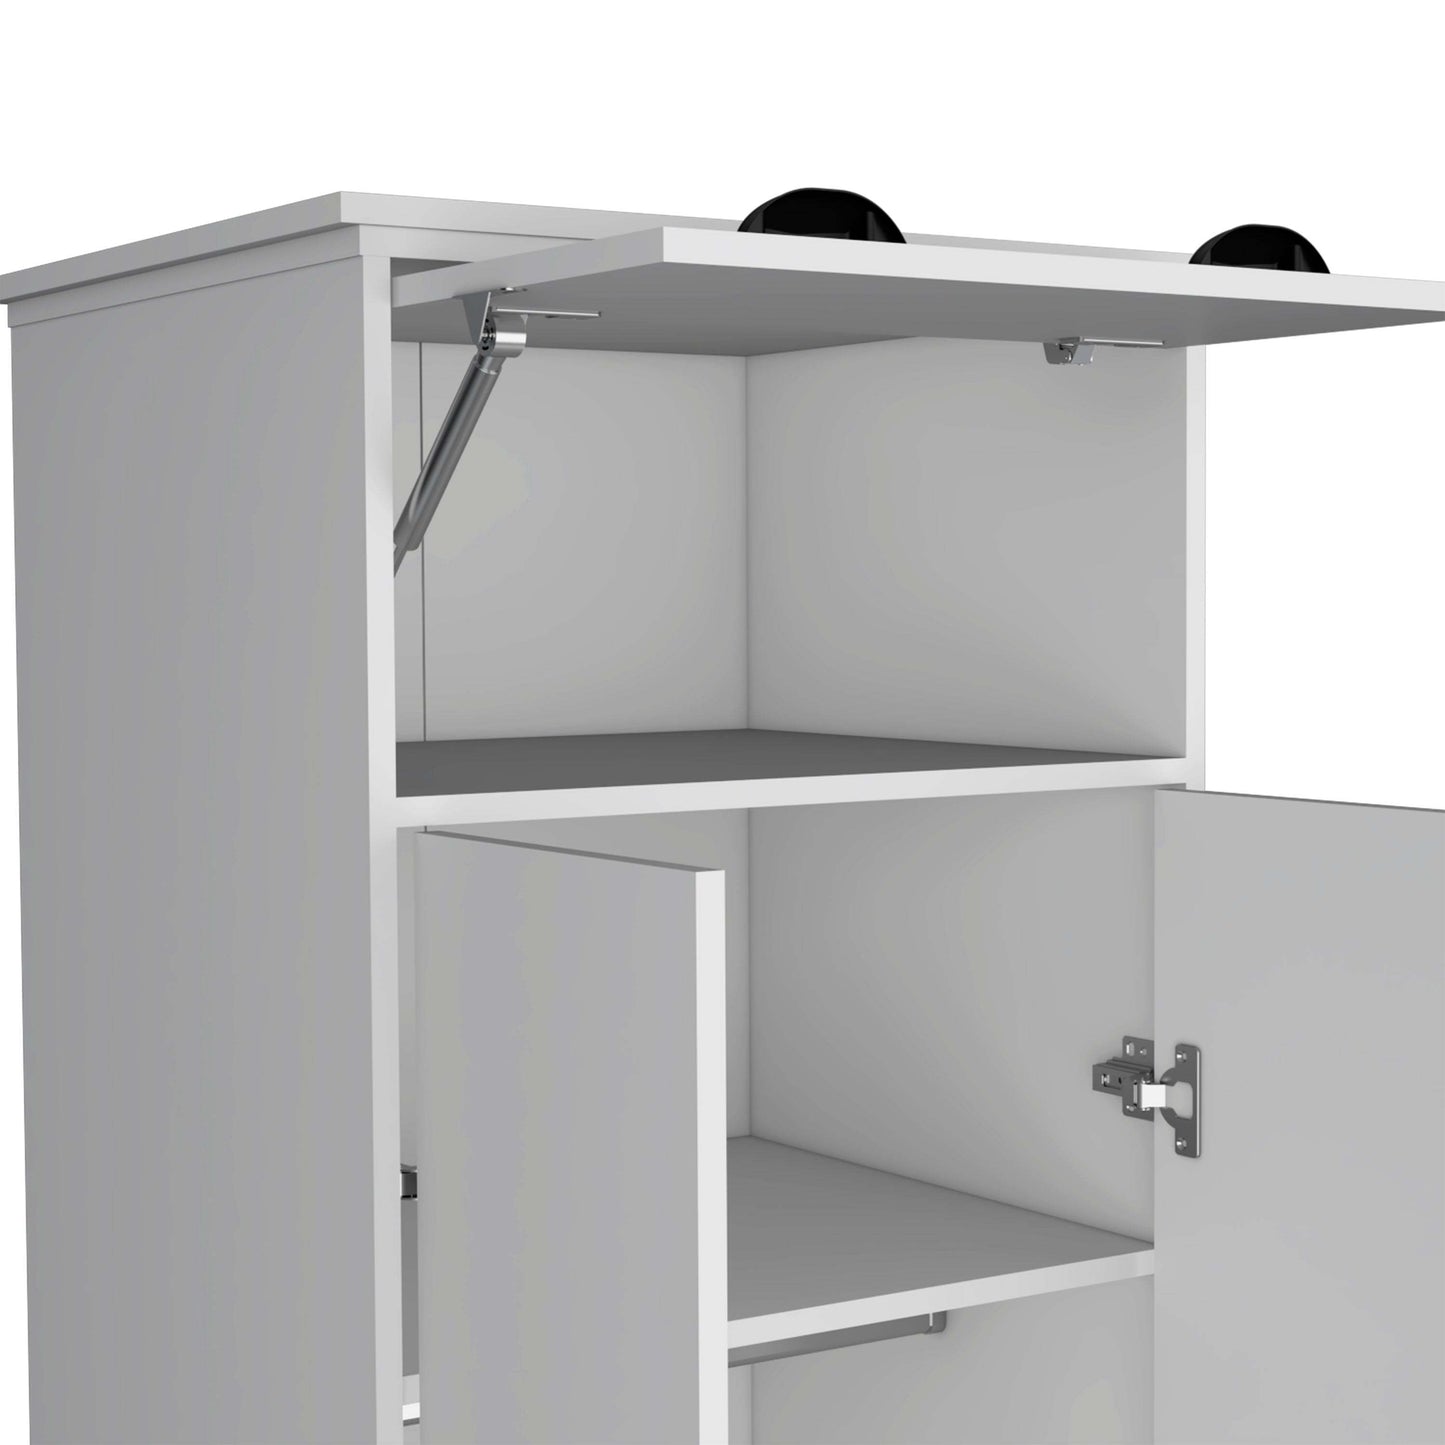 White dresser-closet with upper storage